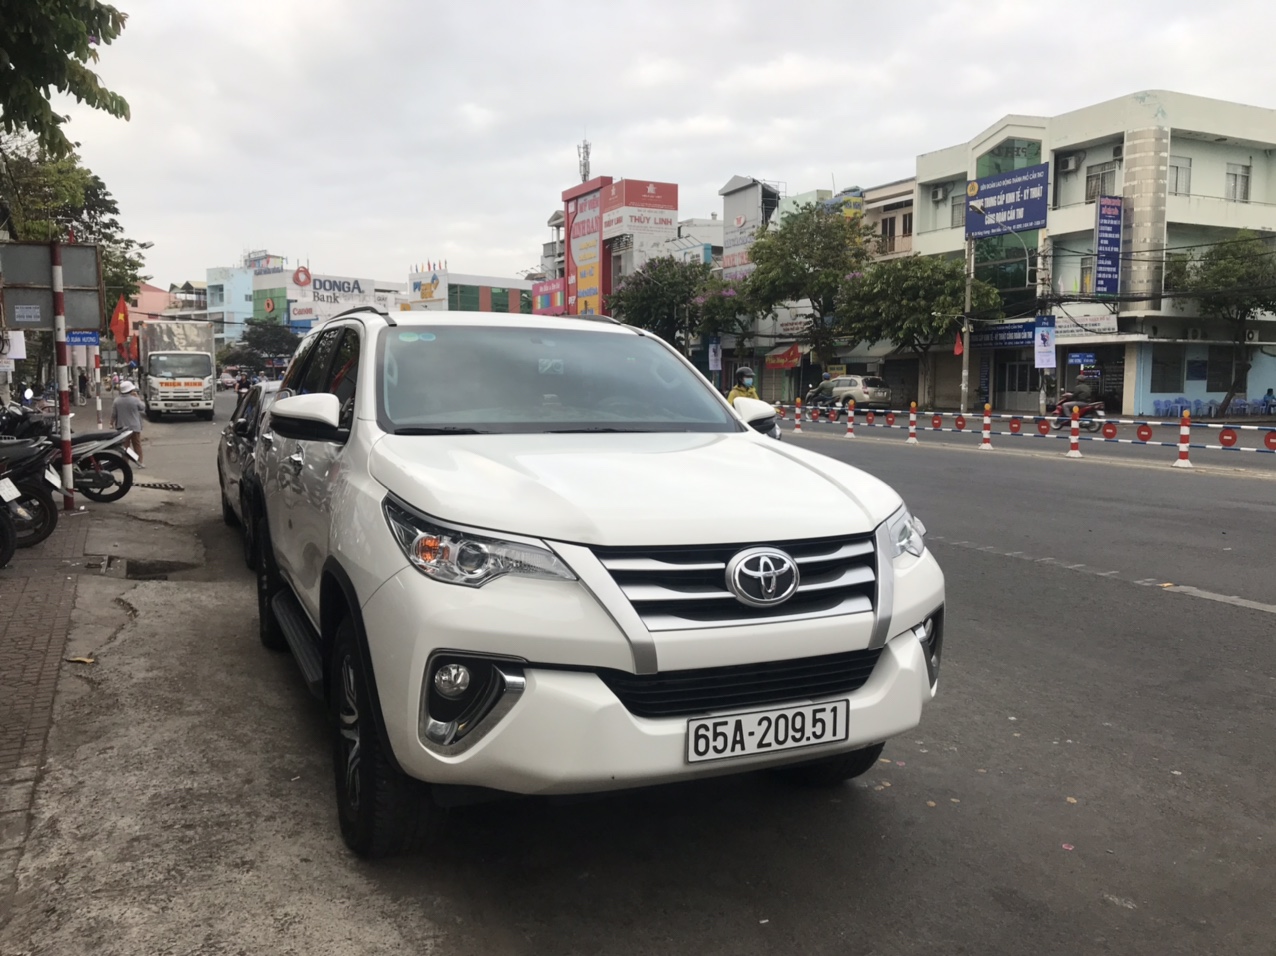 Thuê xe 7 chỗ cần thơ đi sài gòn - Nguyễn Duy Travel